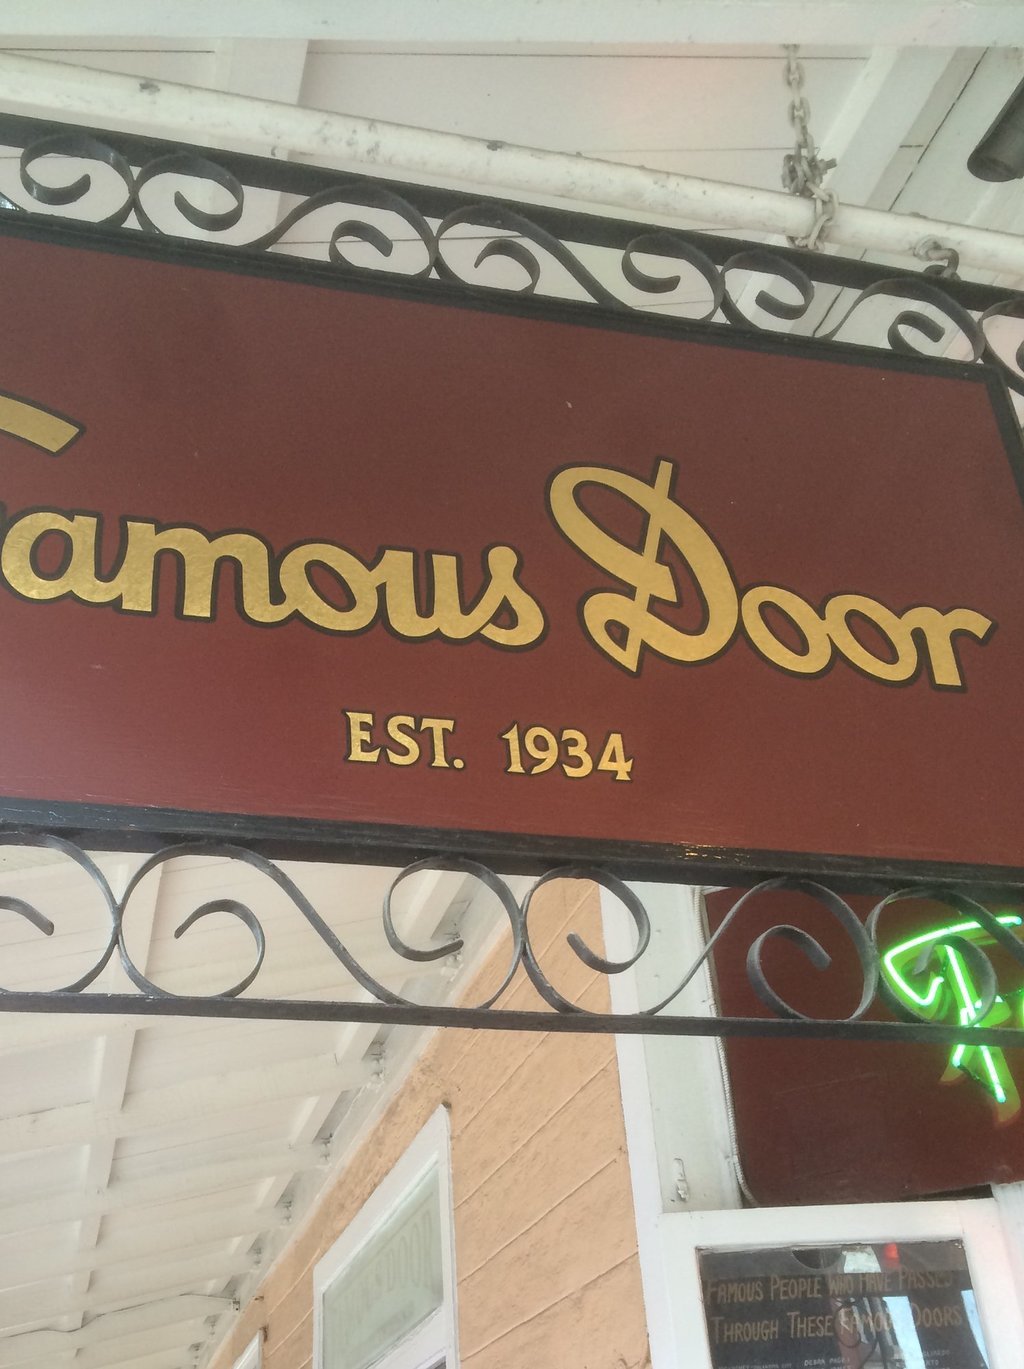 Famous Door